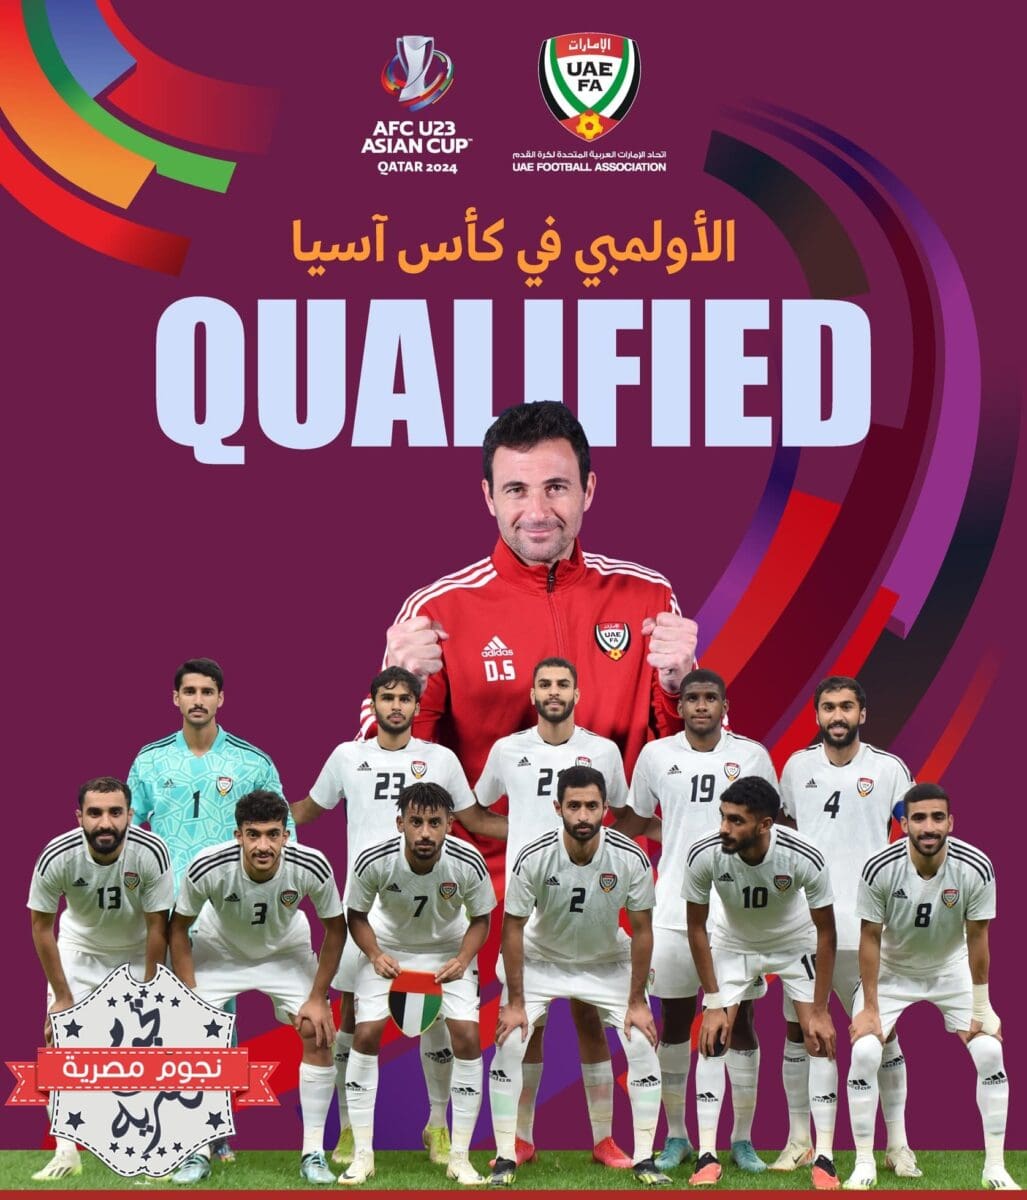 المنتخب الأولمبي الإماراتي أول المتأهلين إلى كأس آسيا تحت 23 سنة قطر 2024 (مصدر الصورة. الحساب الرسمي للمنتخب الإماراتي في موقع إكس)